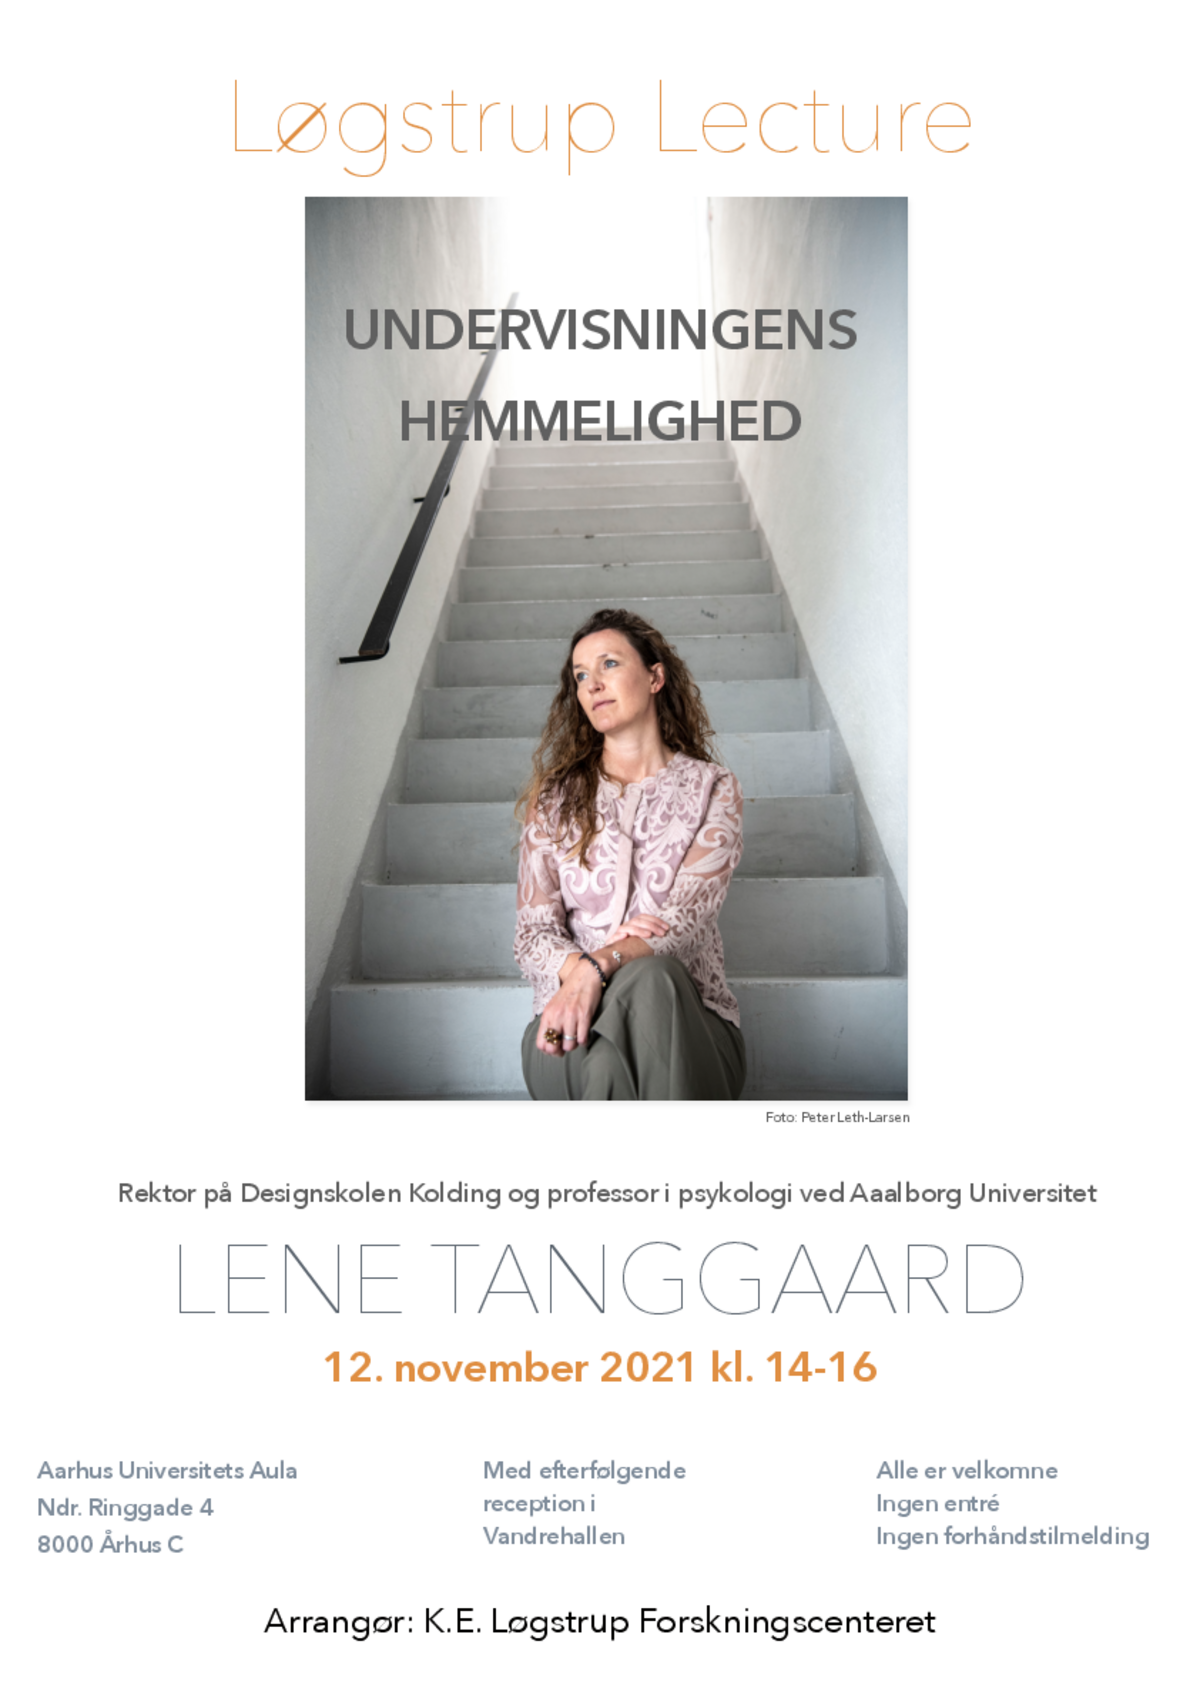 Løgstrup Lecture 2021: Lene Tanggaard